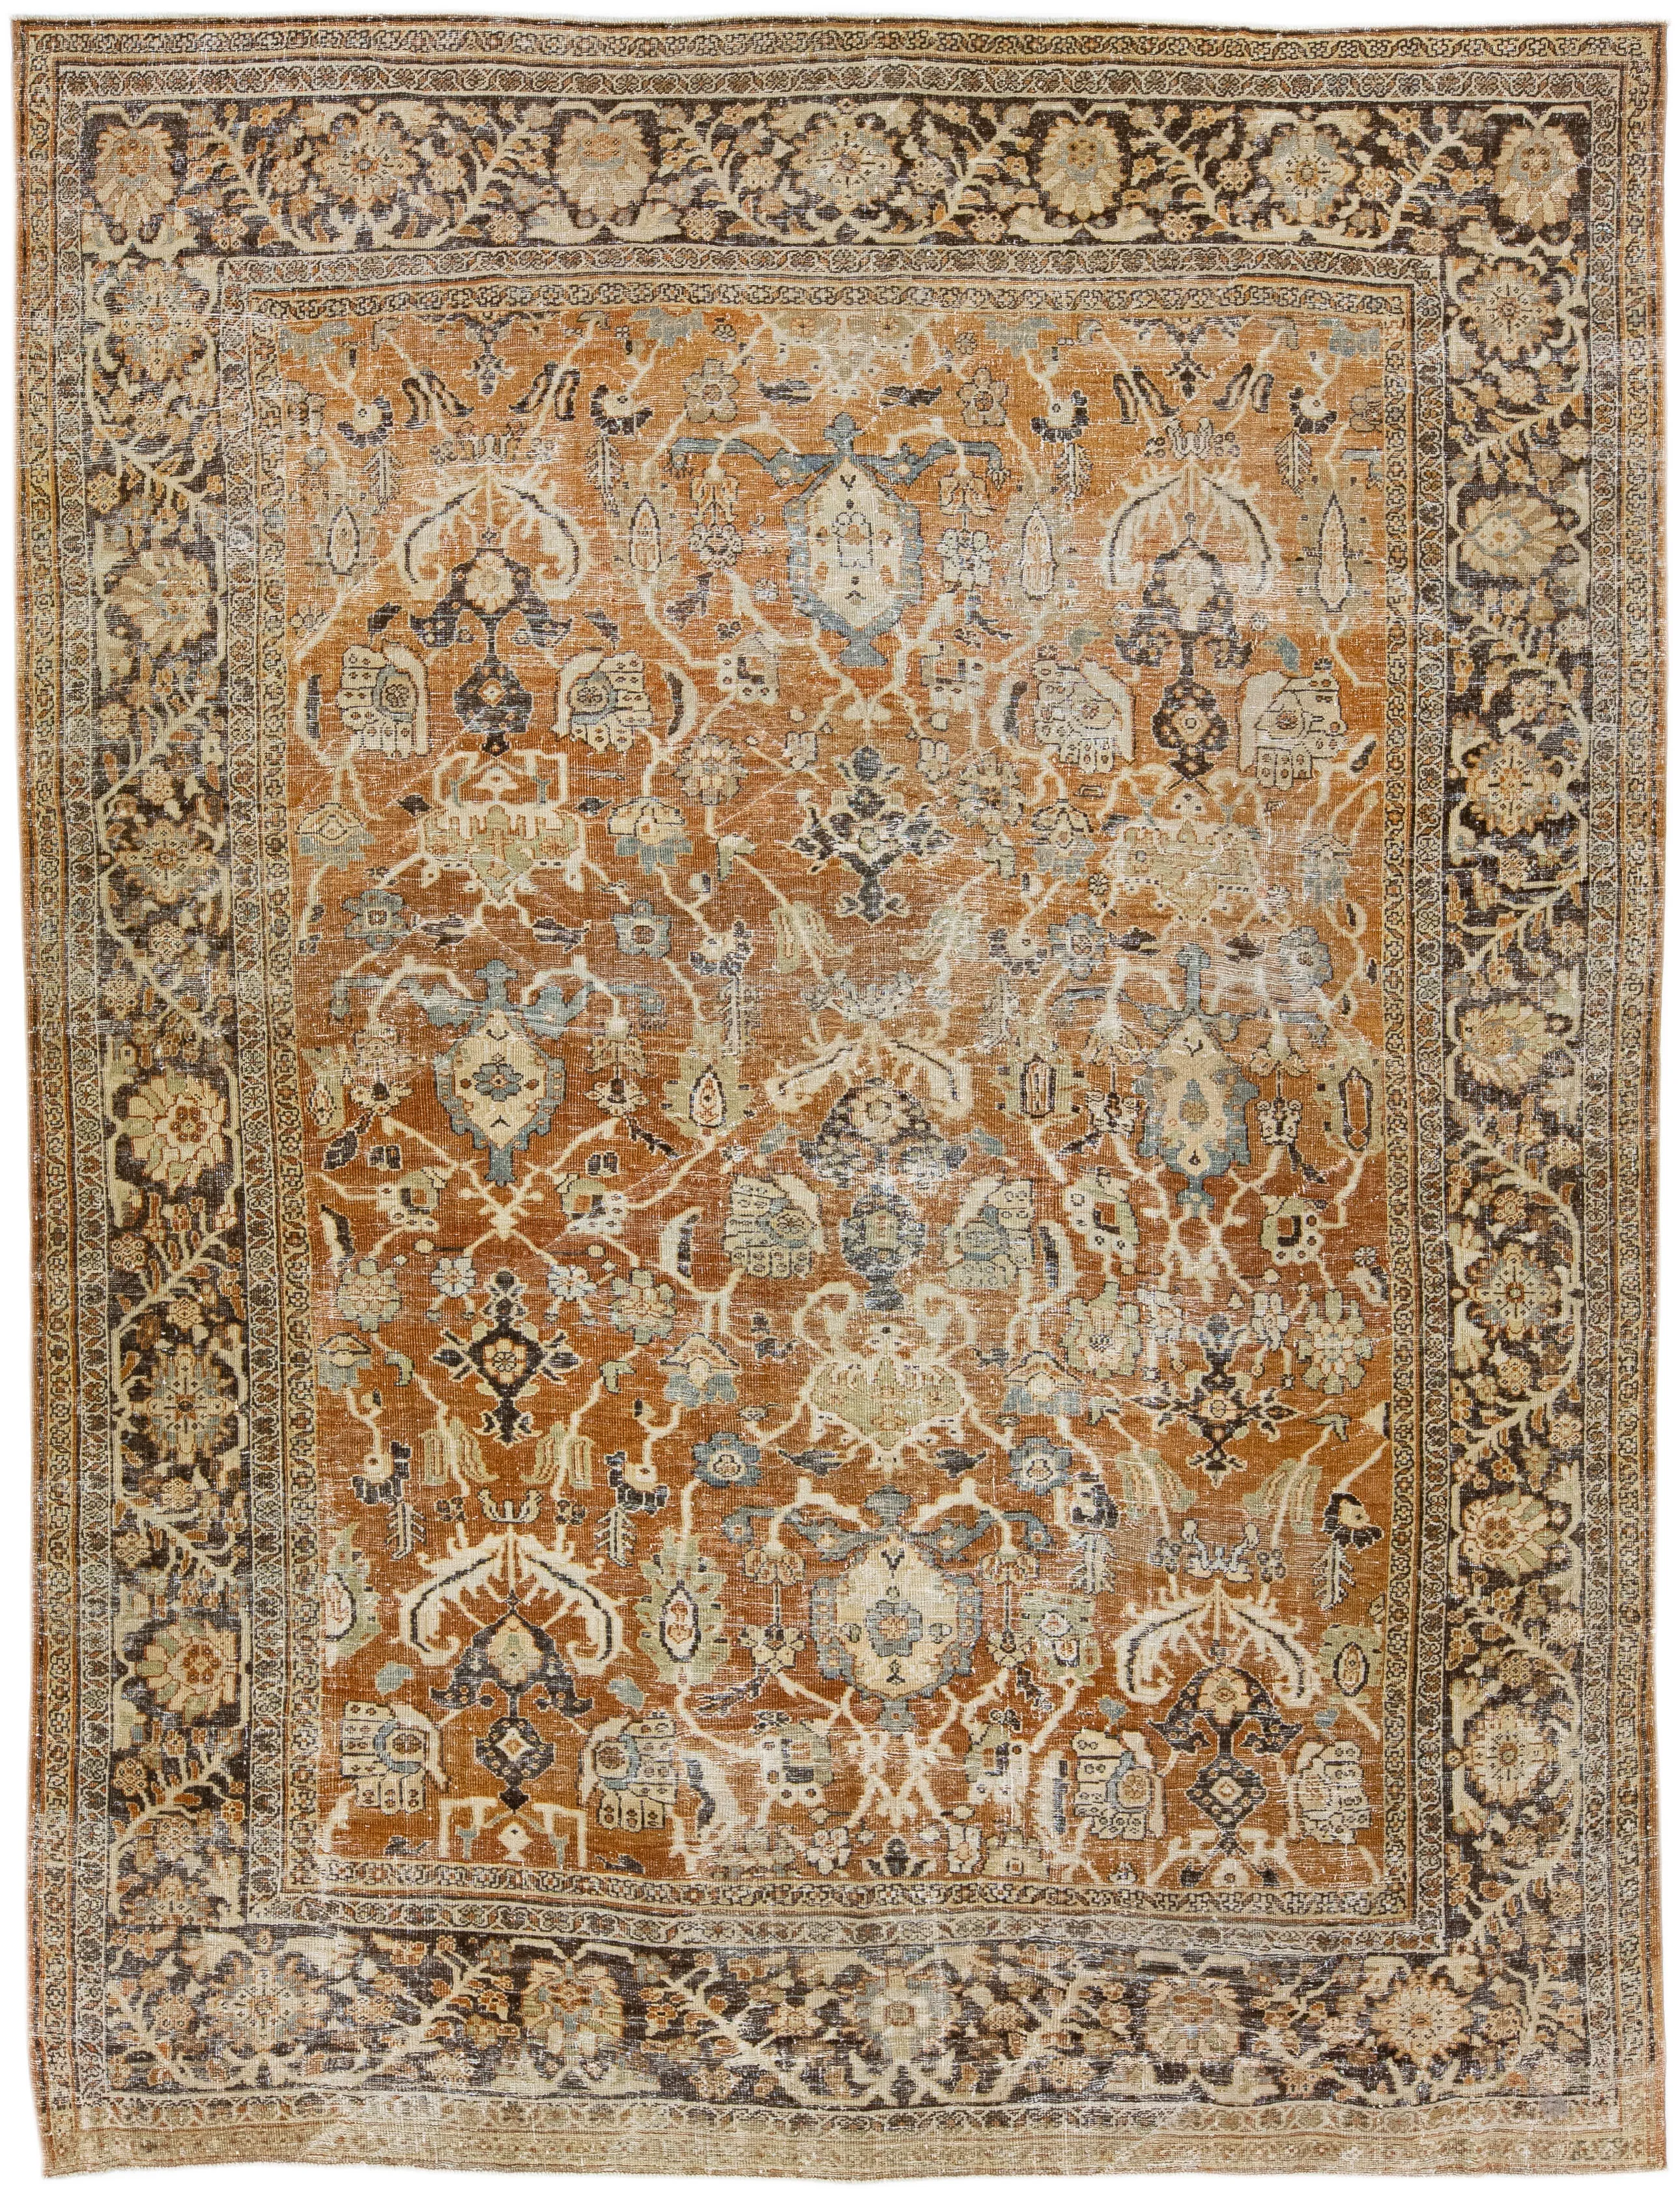 Antique Persian Mahal Rug - Apadana - Brown - Brown